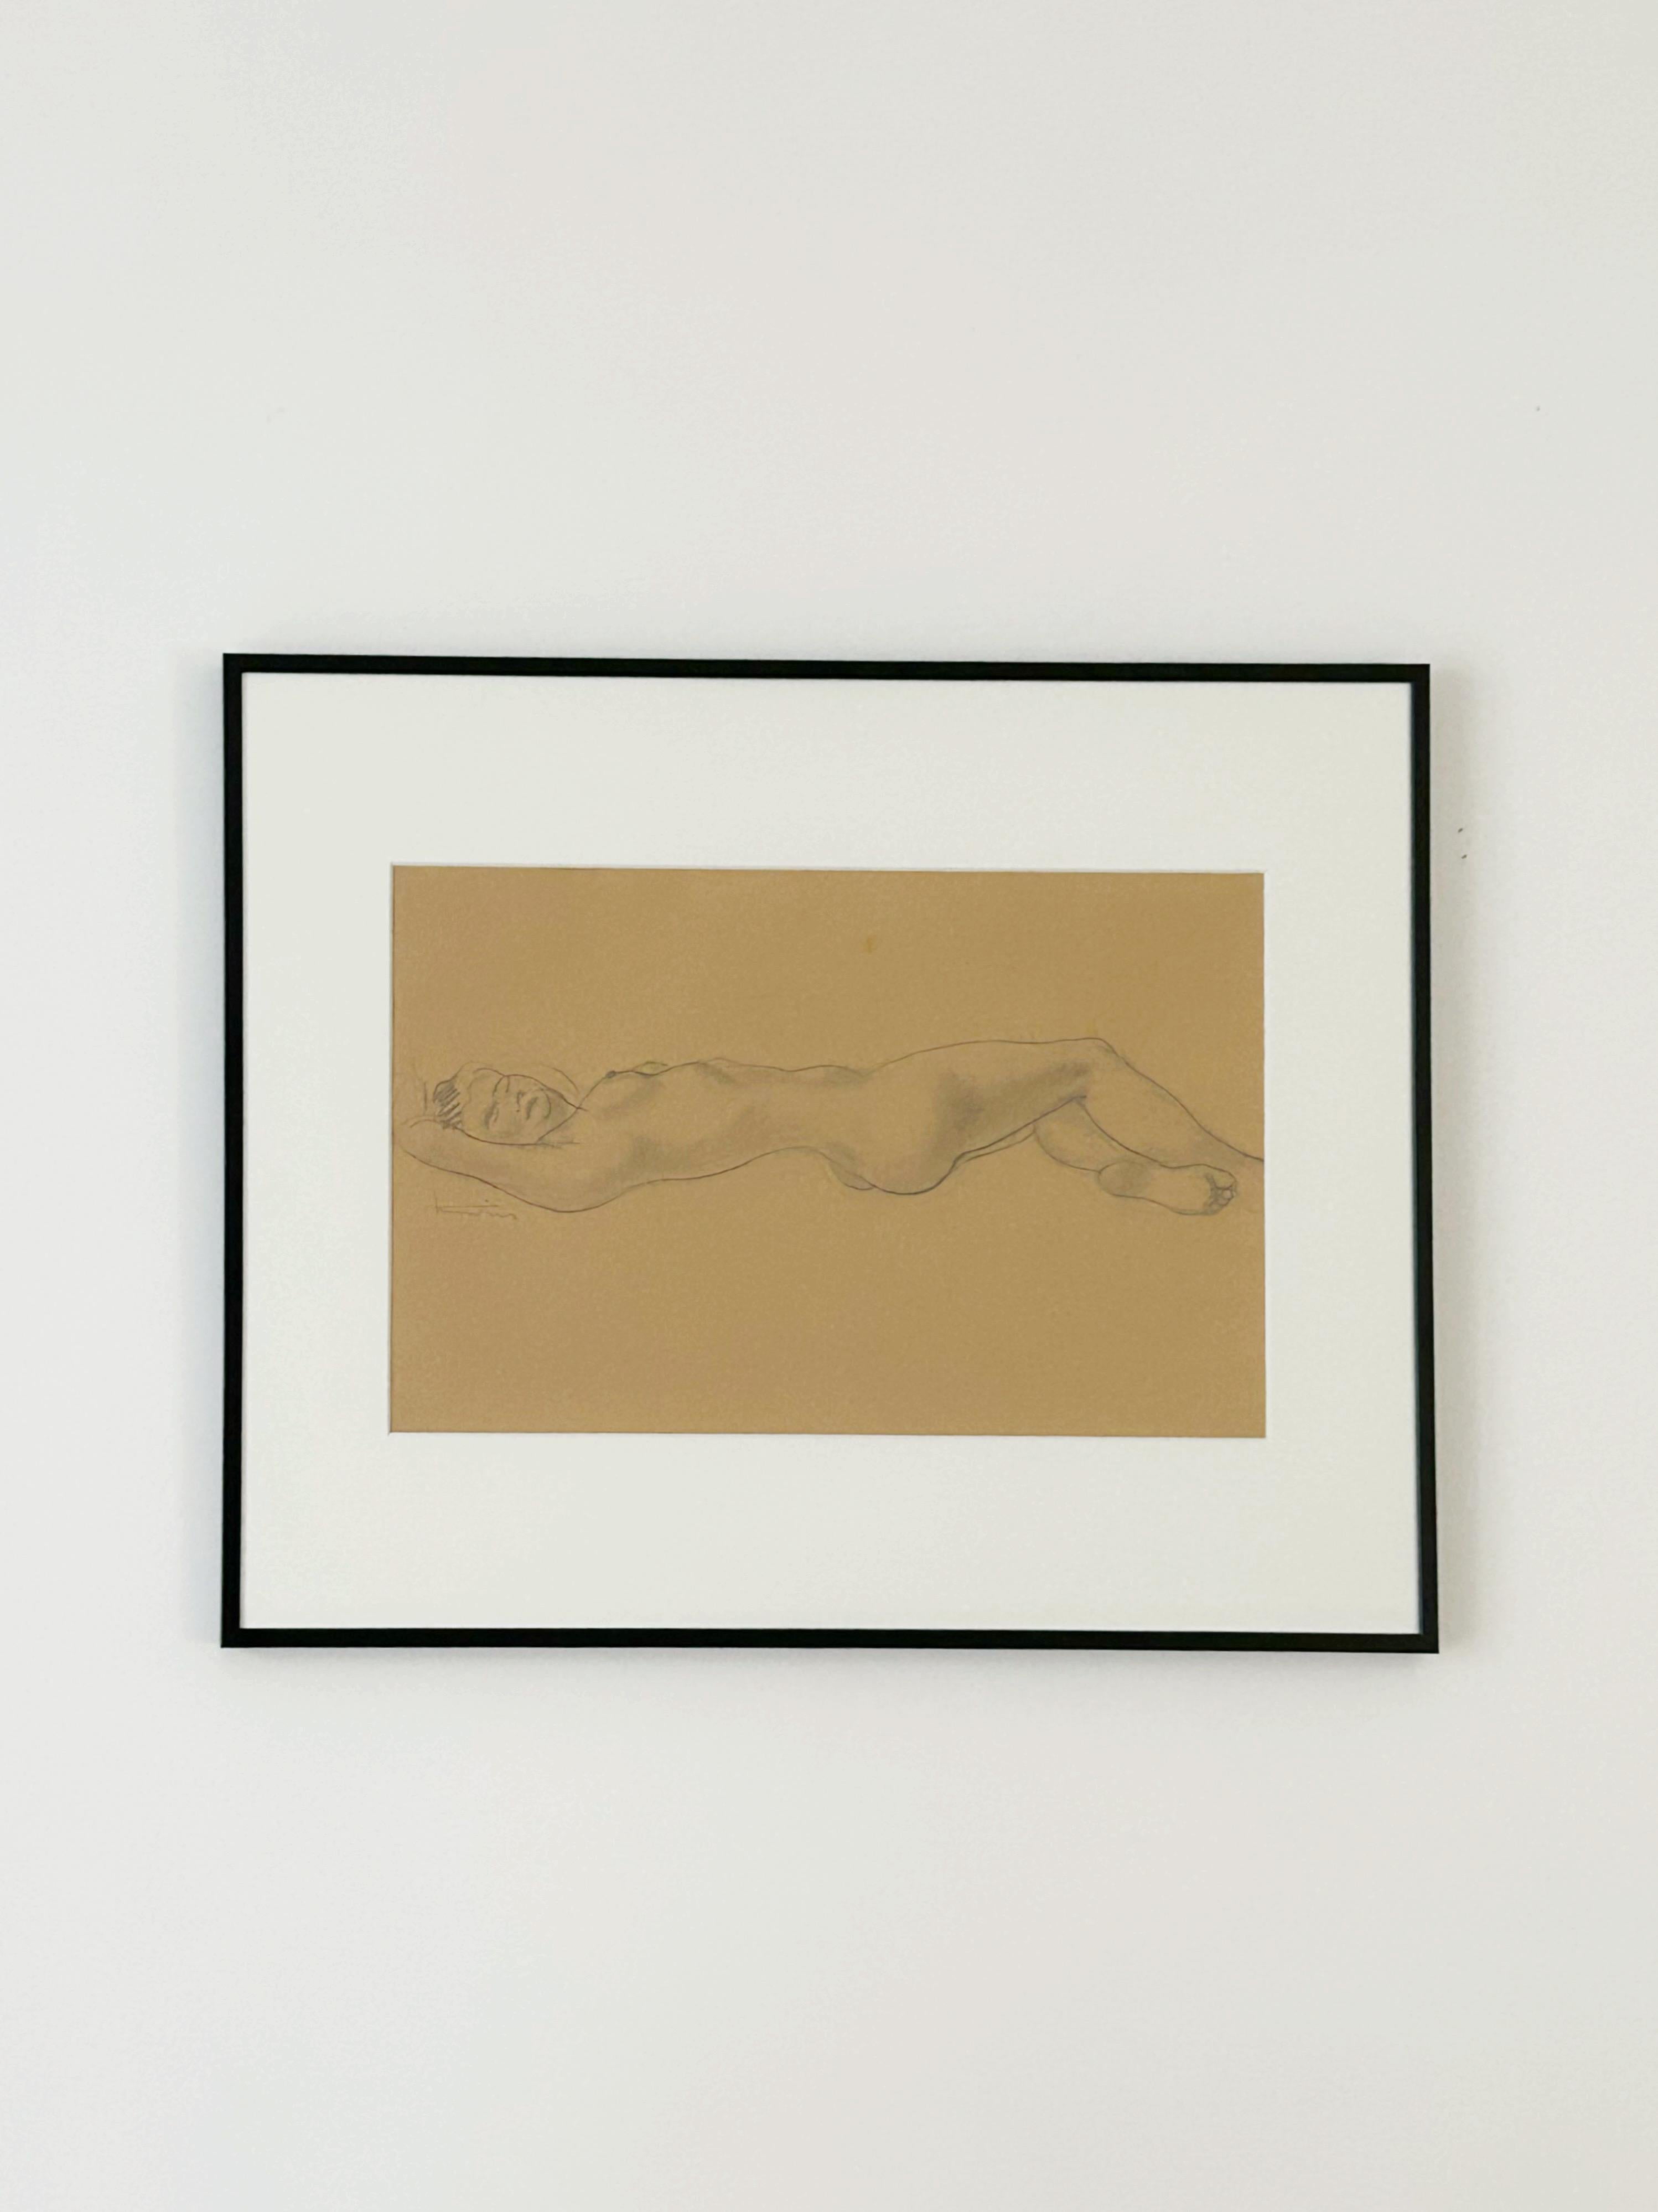 Jean MARTIN (1911-1996)
Nu féminin, vers 1940
Crayon sur papier
Signé à gauche
25 x 38 cm
cadre : 40 x 50 cm

Peintre autodidacte né à Lyon en 1911, Jean Martin développe un style de peinture de réalité sur les franges des débats autour de la